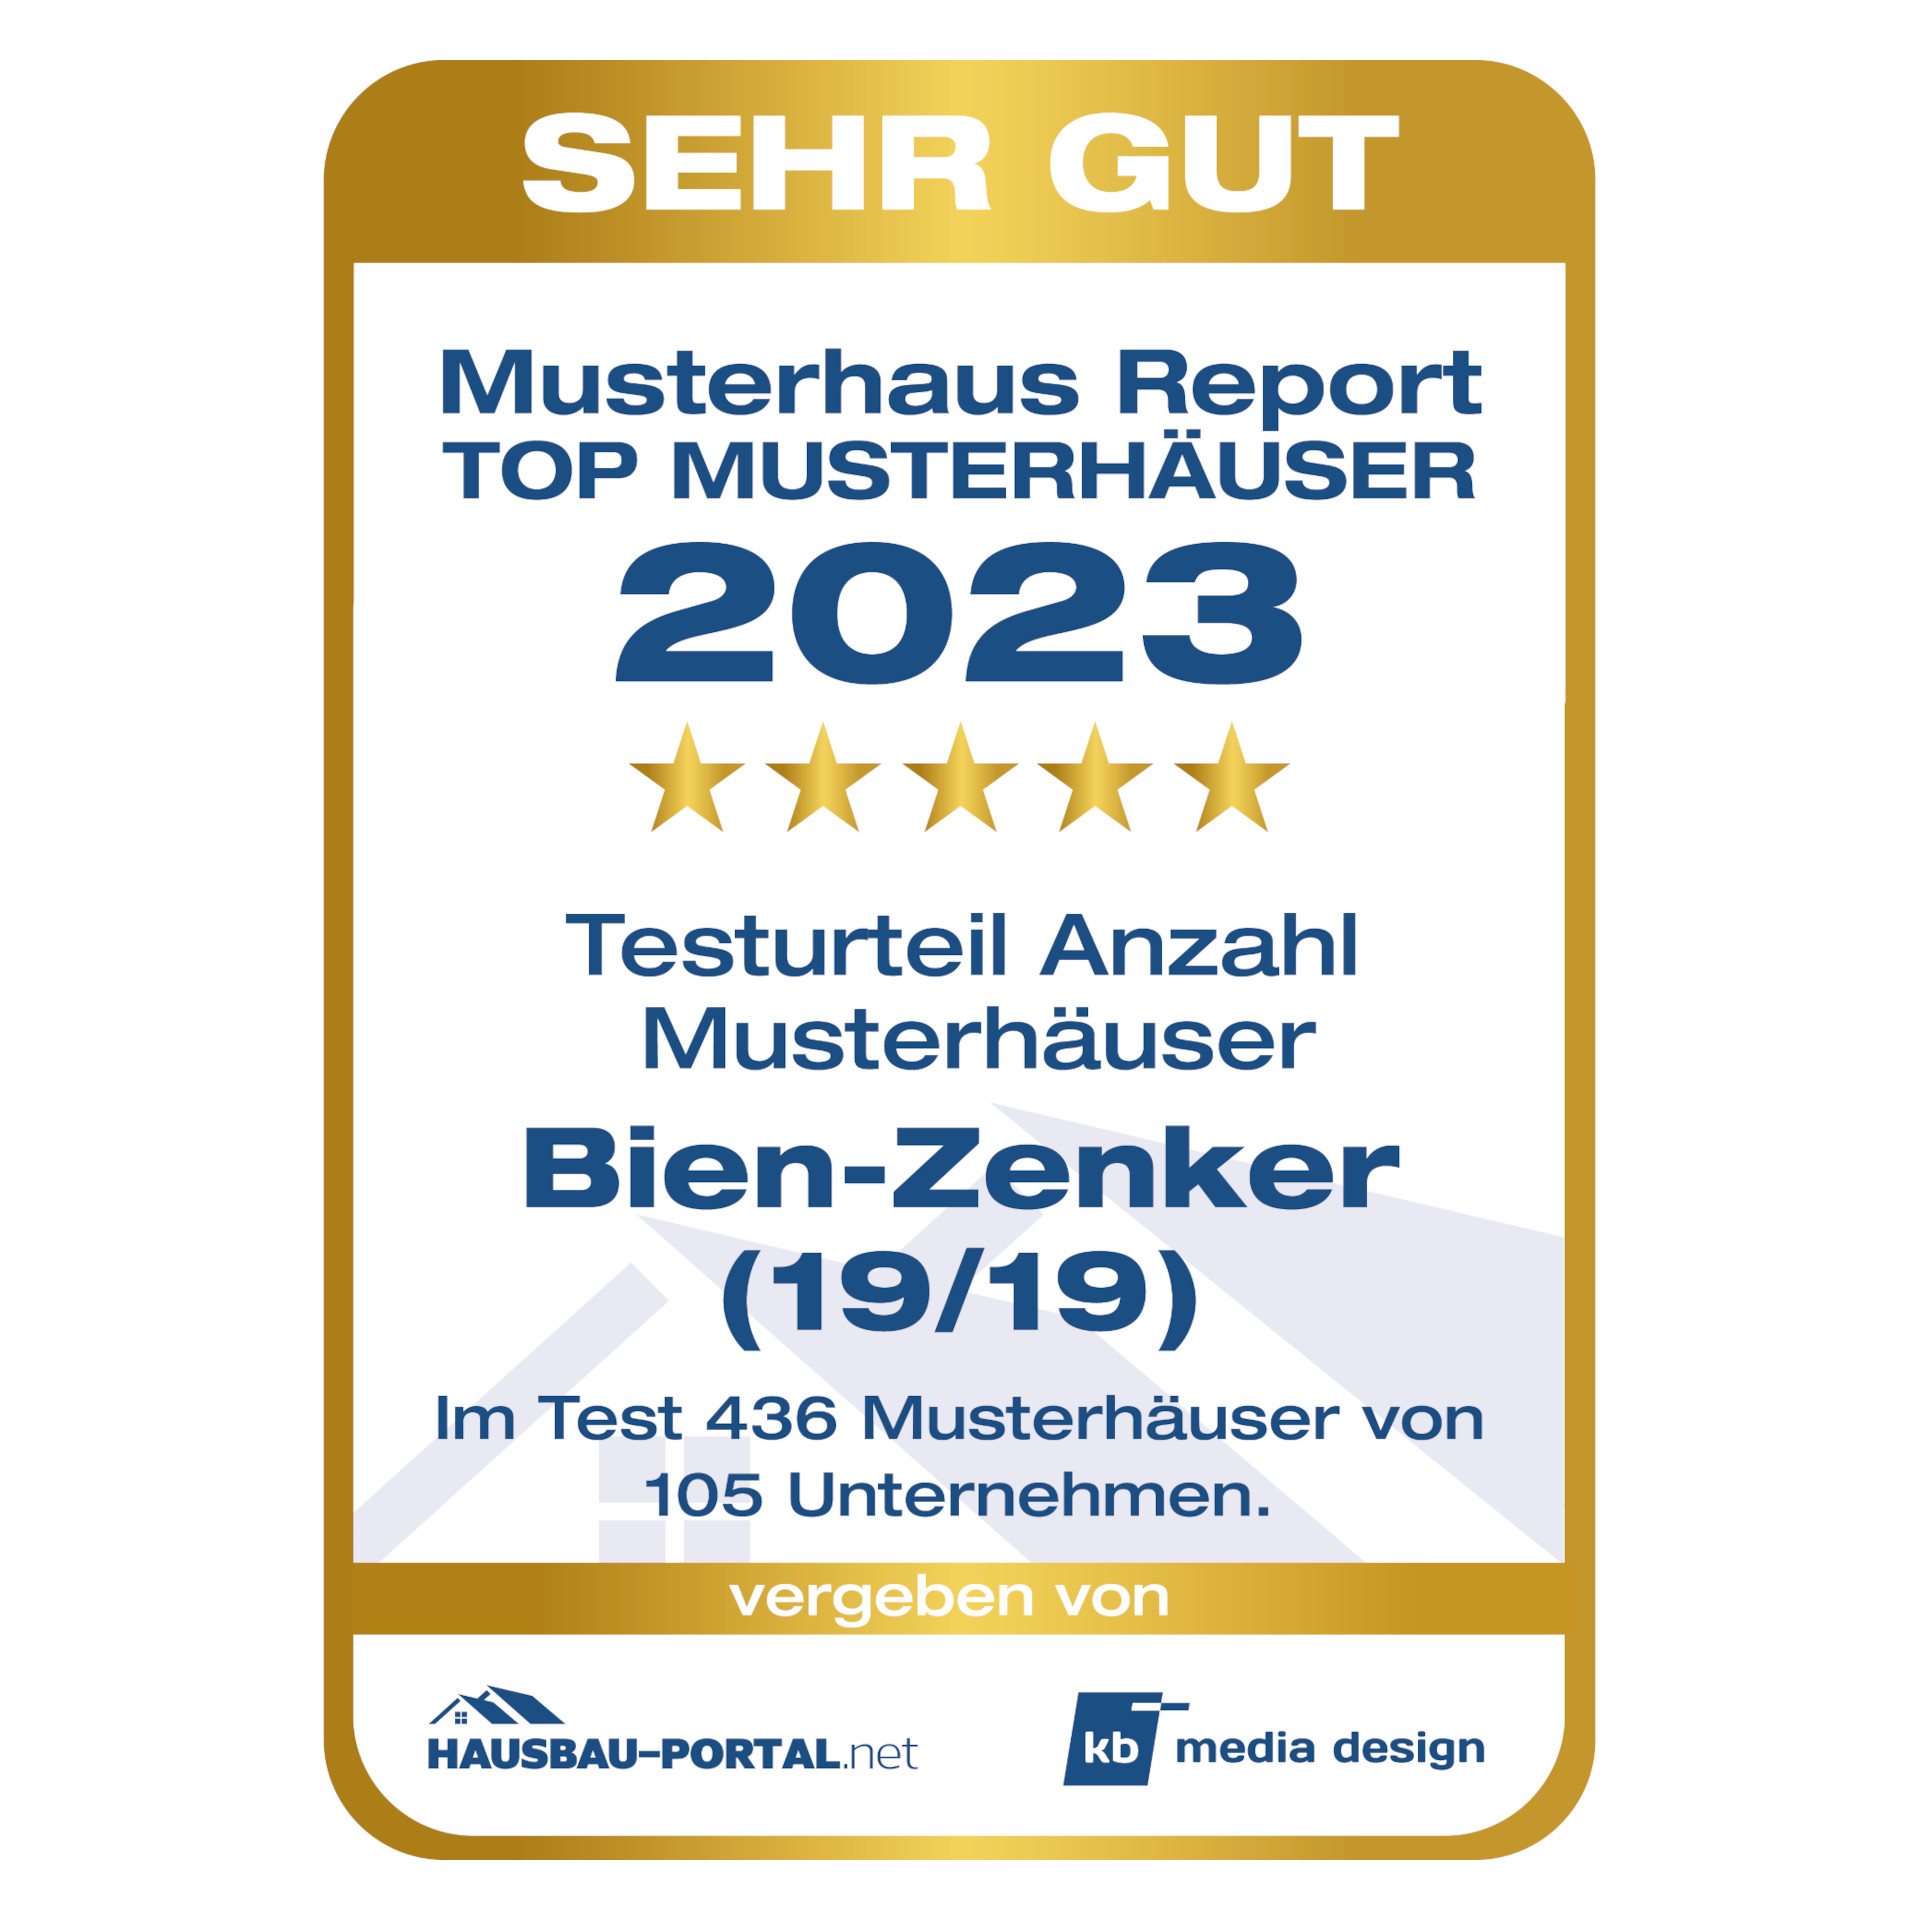 Bien-Zenker erneut erfolgreich beim Musterhaus Report 2023